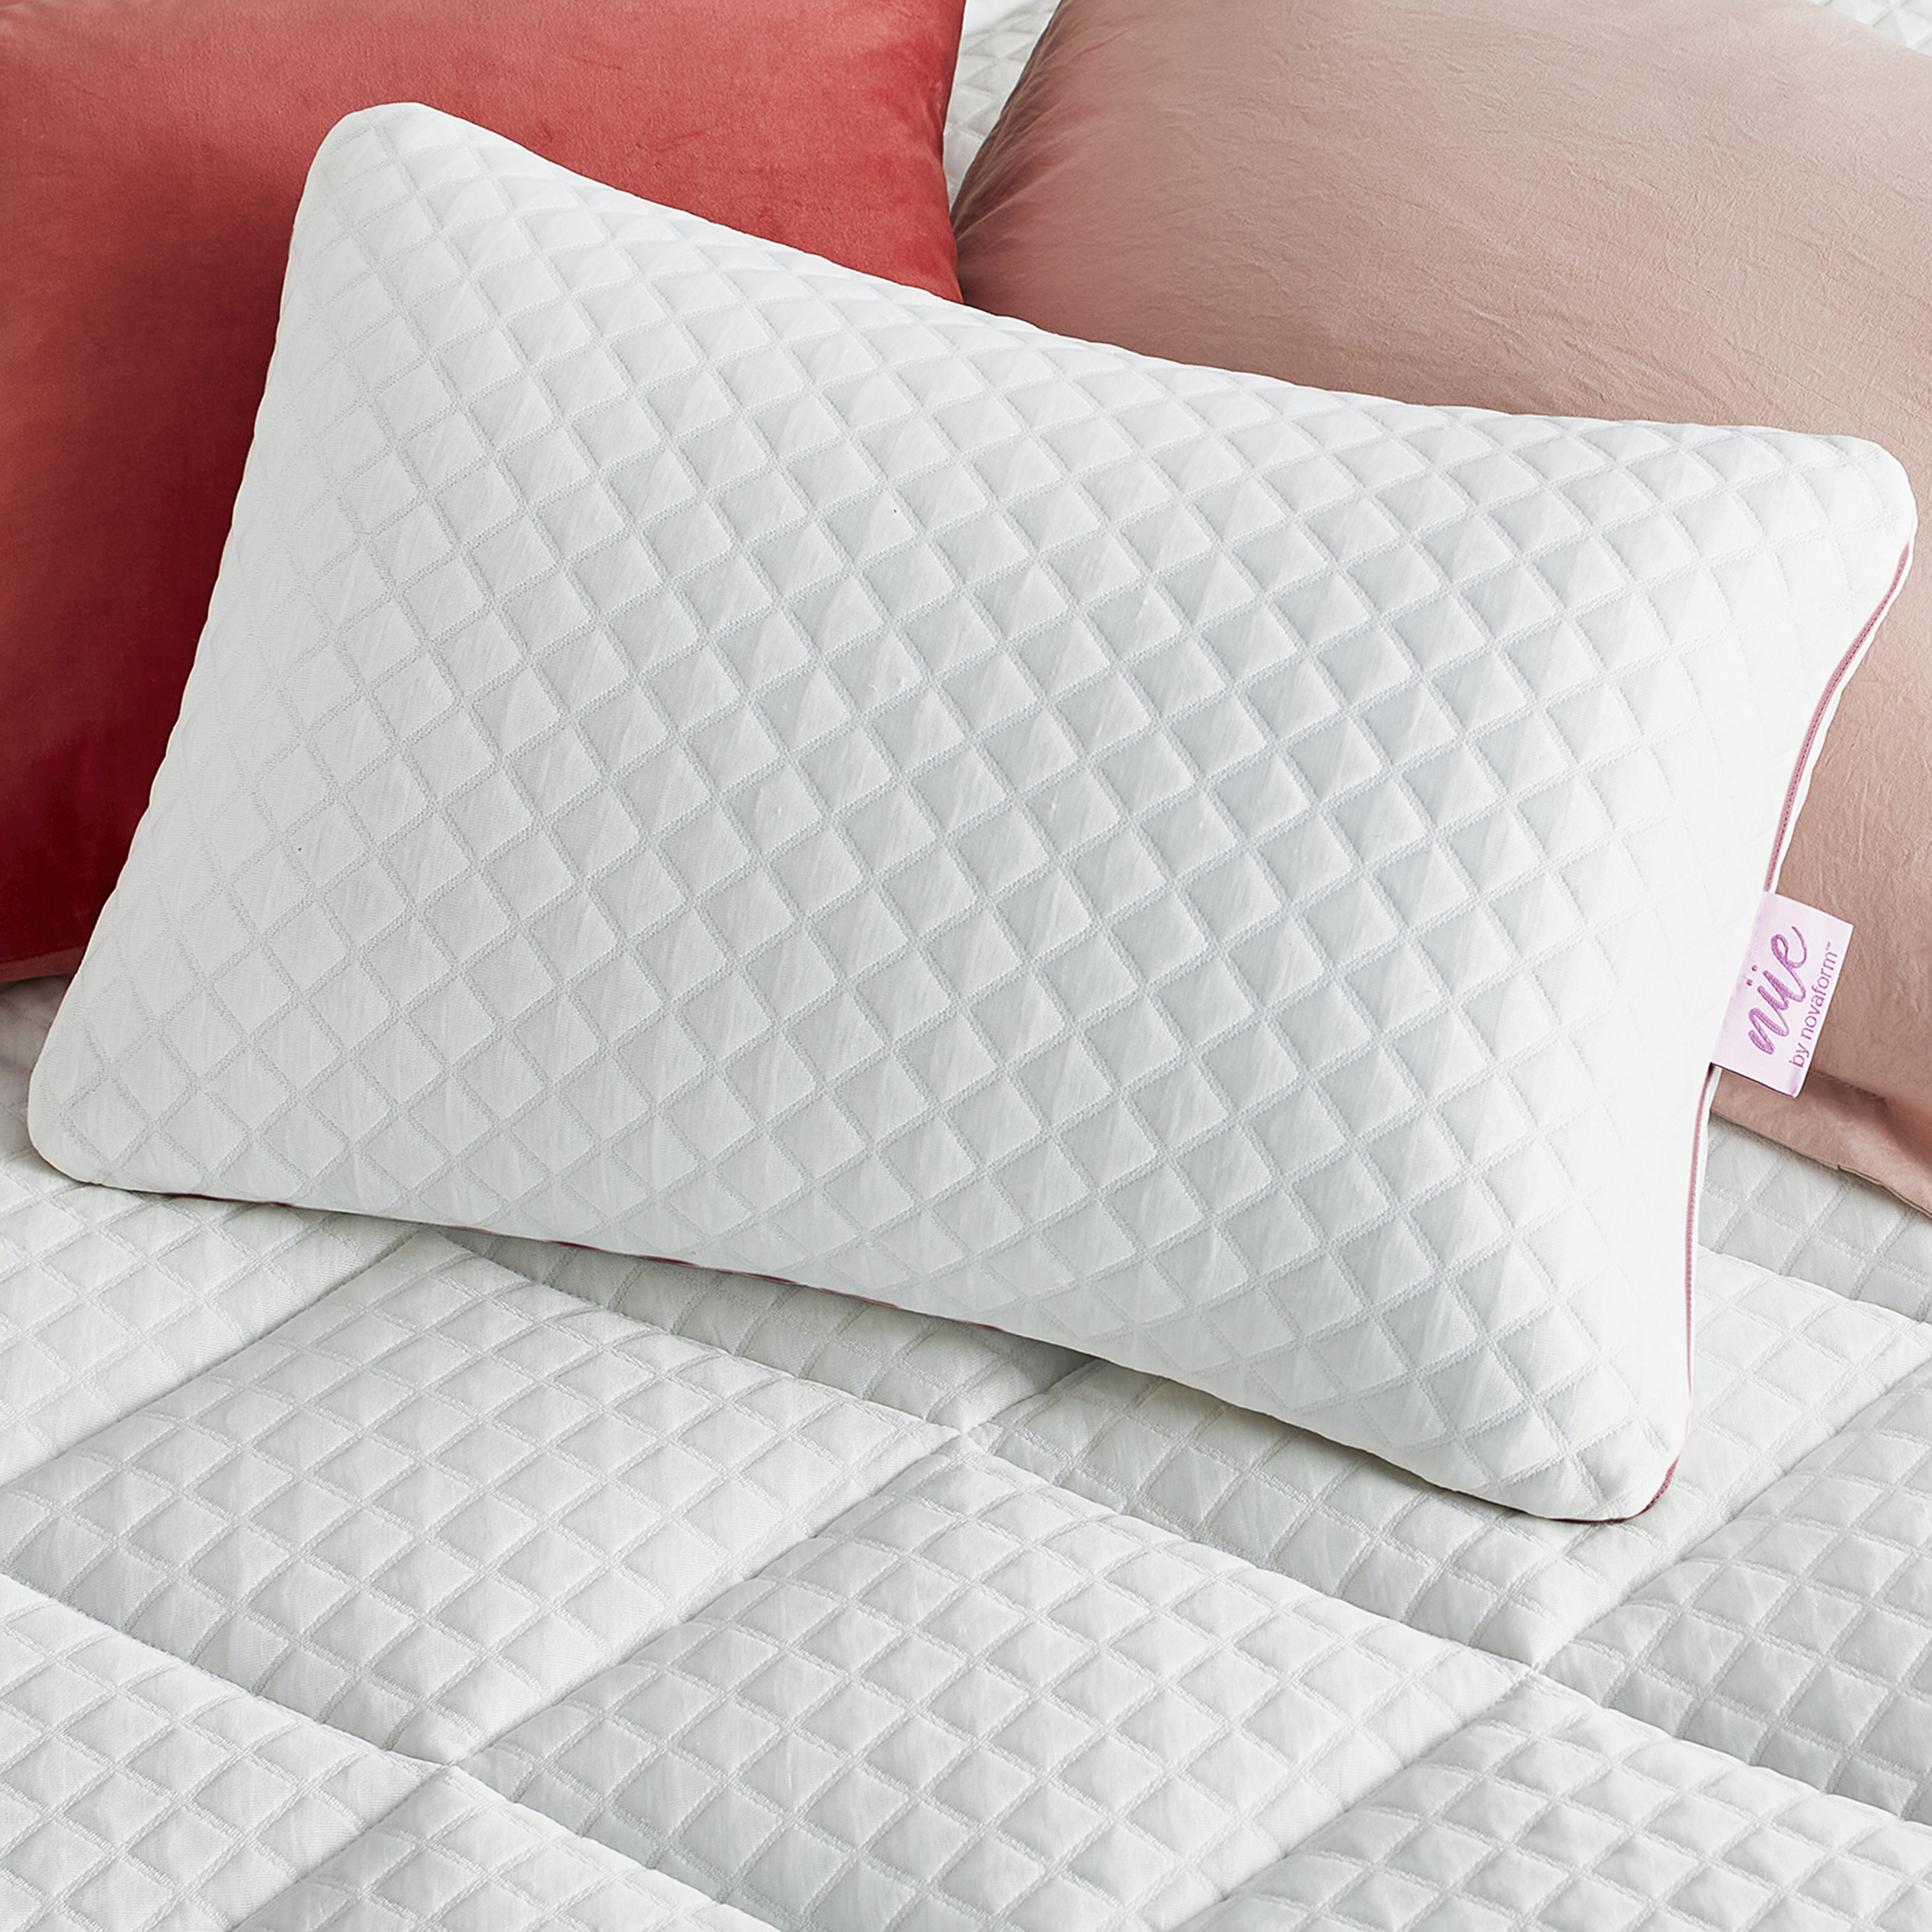 Gel Memory Foam Pillow, Set of 2 - Molecule